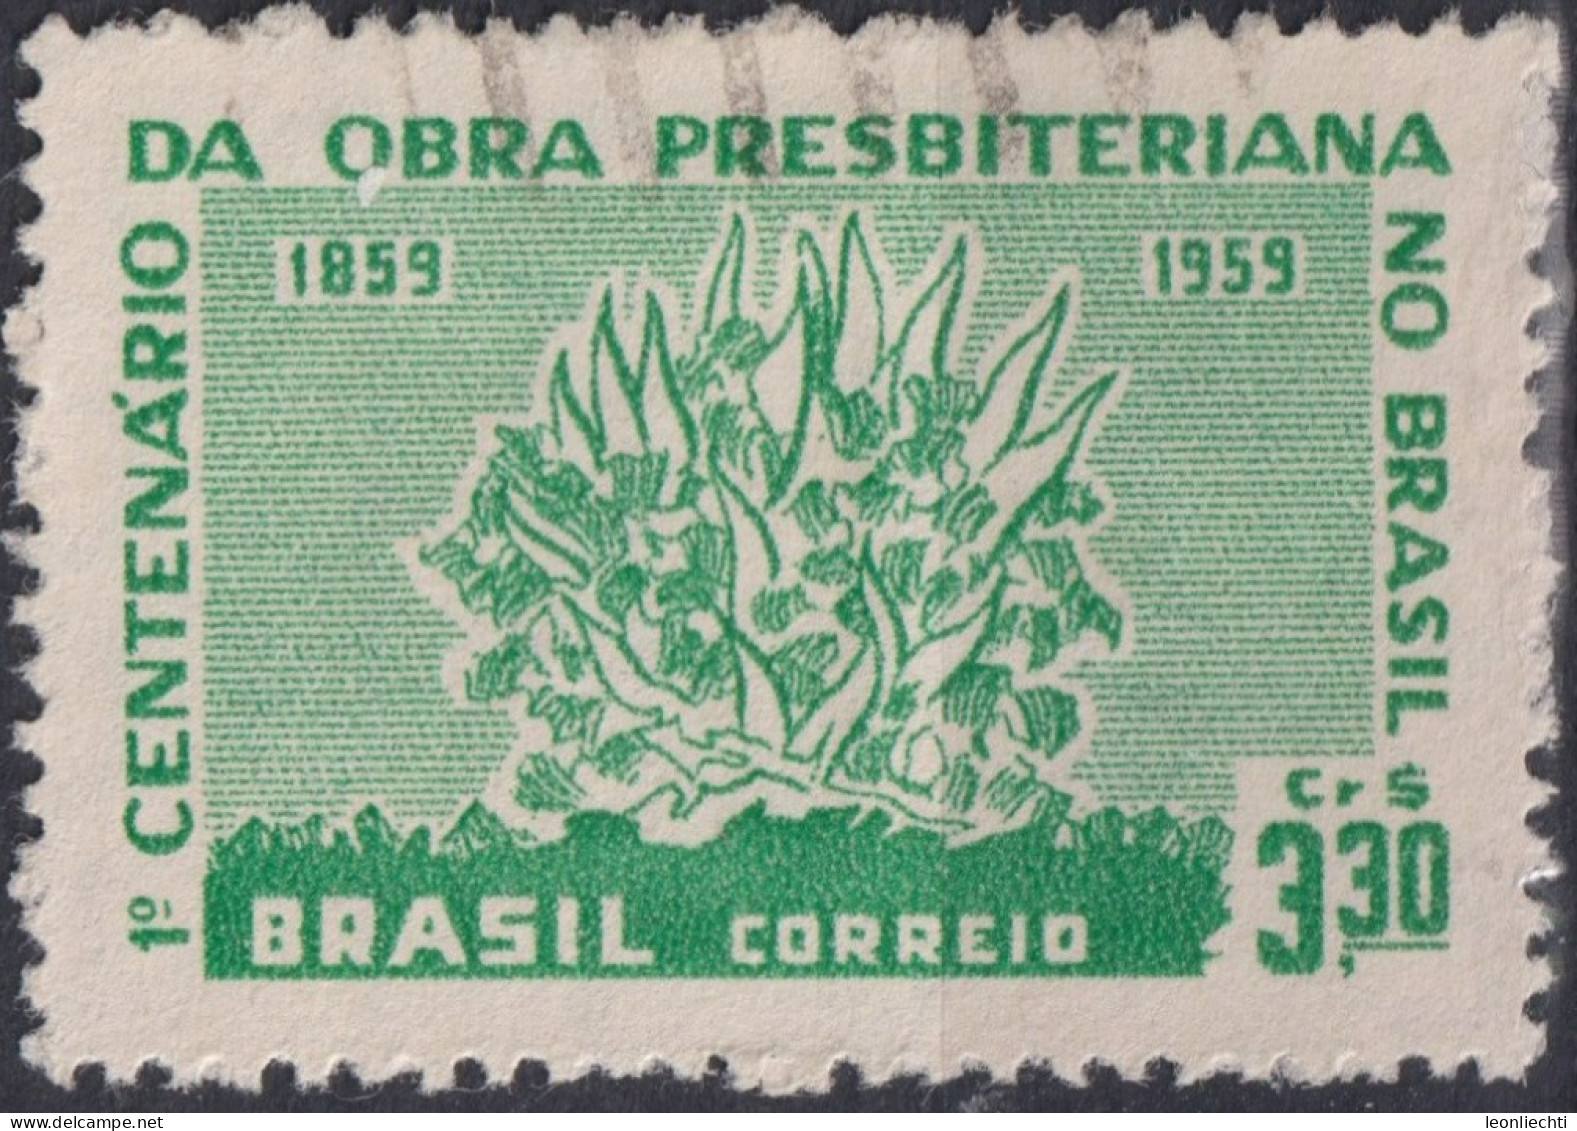 1959 Brasilien ° Mi:BR 970, Sn:BR 902, Yt:BR 687, Burning Bush, Brennender Busch - Usados